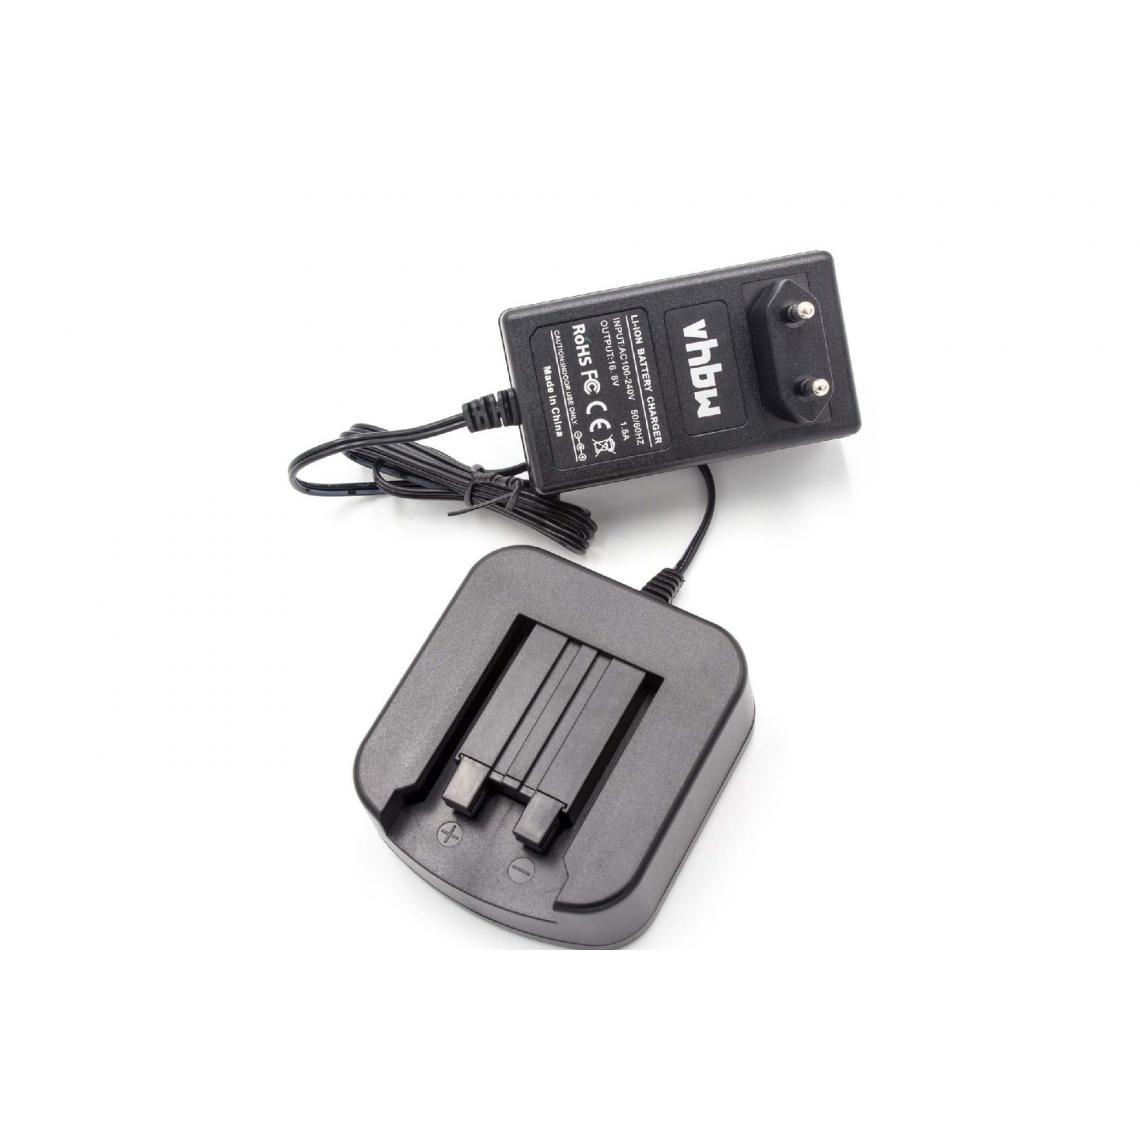 Vhbw - vhbw Chargeur compatible avec Festo / Festool BPS 15 batteries Li-ion d'outils (14,4V) - Clouterie